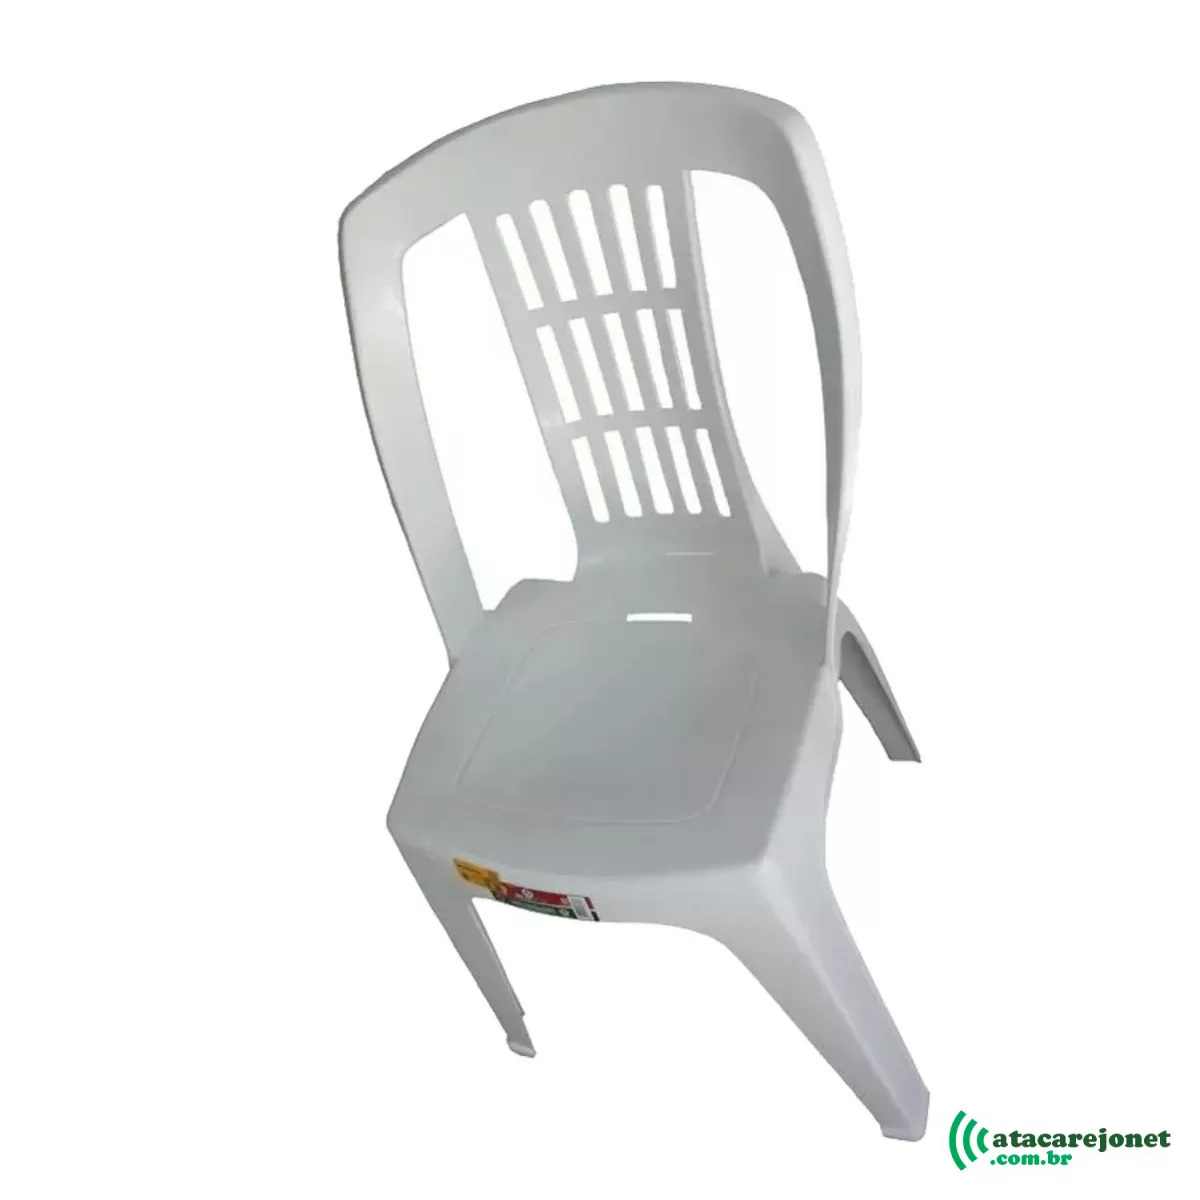 Cadeira Bistrô Plástica Branca Reforçada Capacidade 182kg